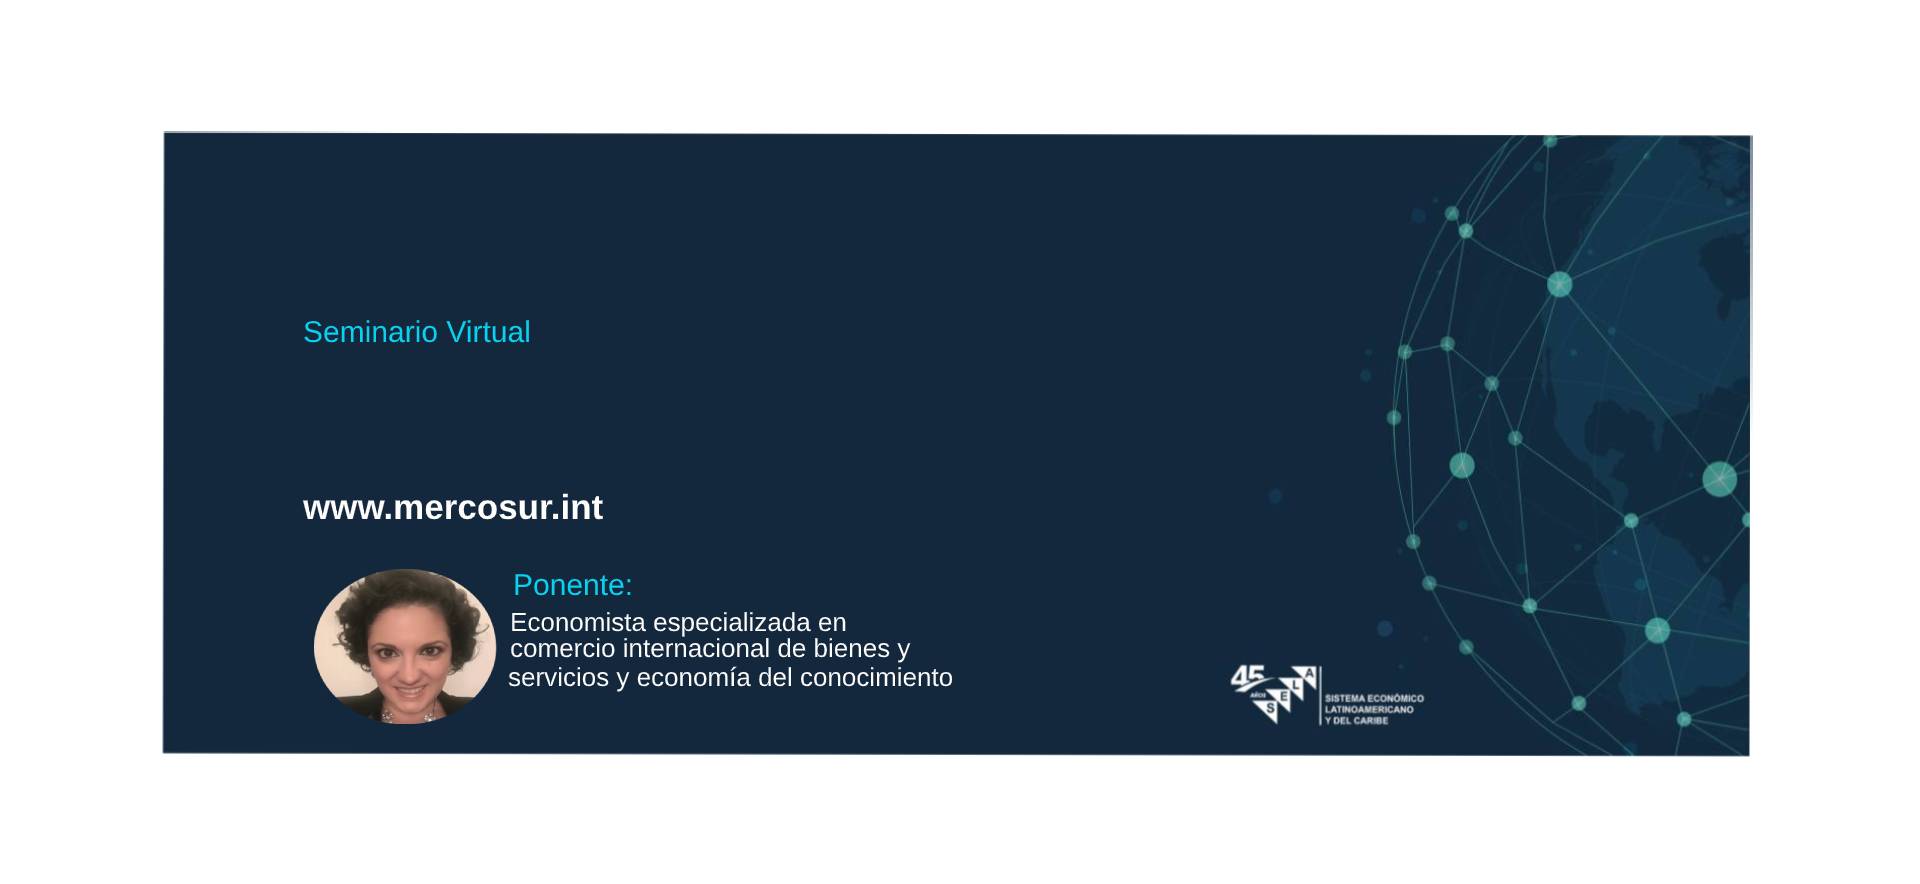 Servicios basados en el conocimiento: Relevancia y oportunidades para el Mercosur